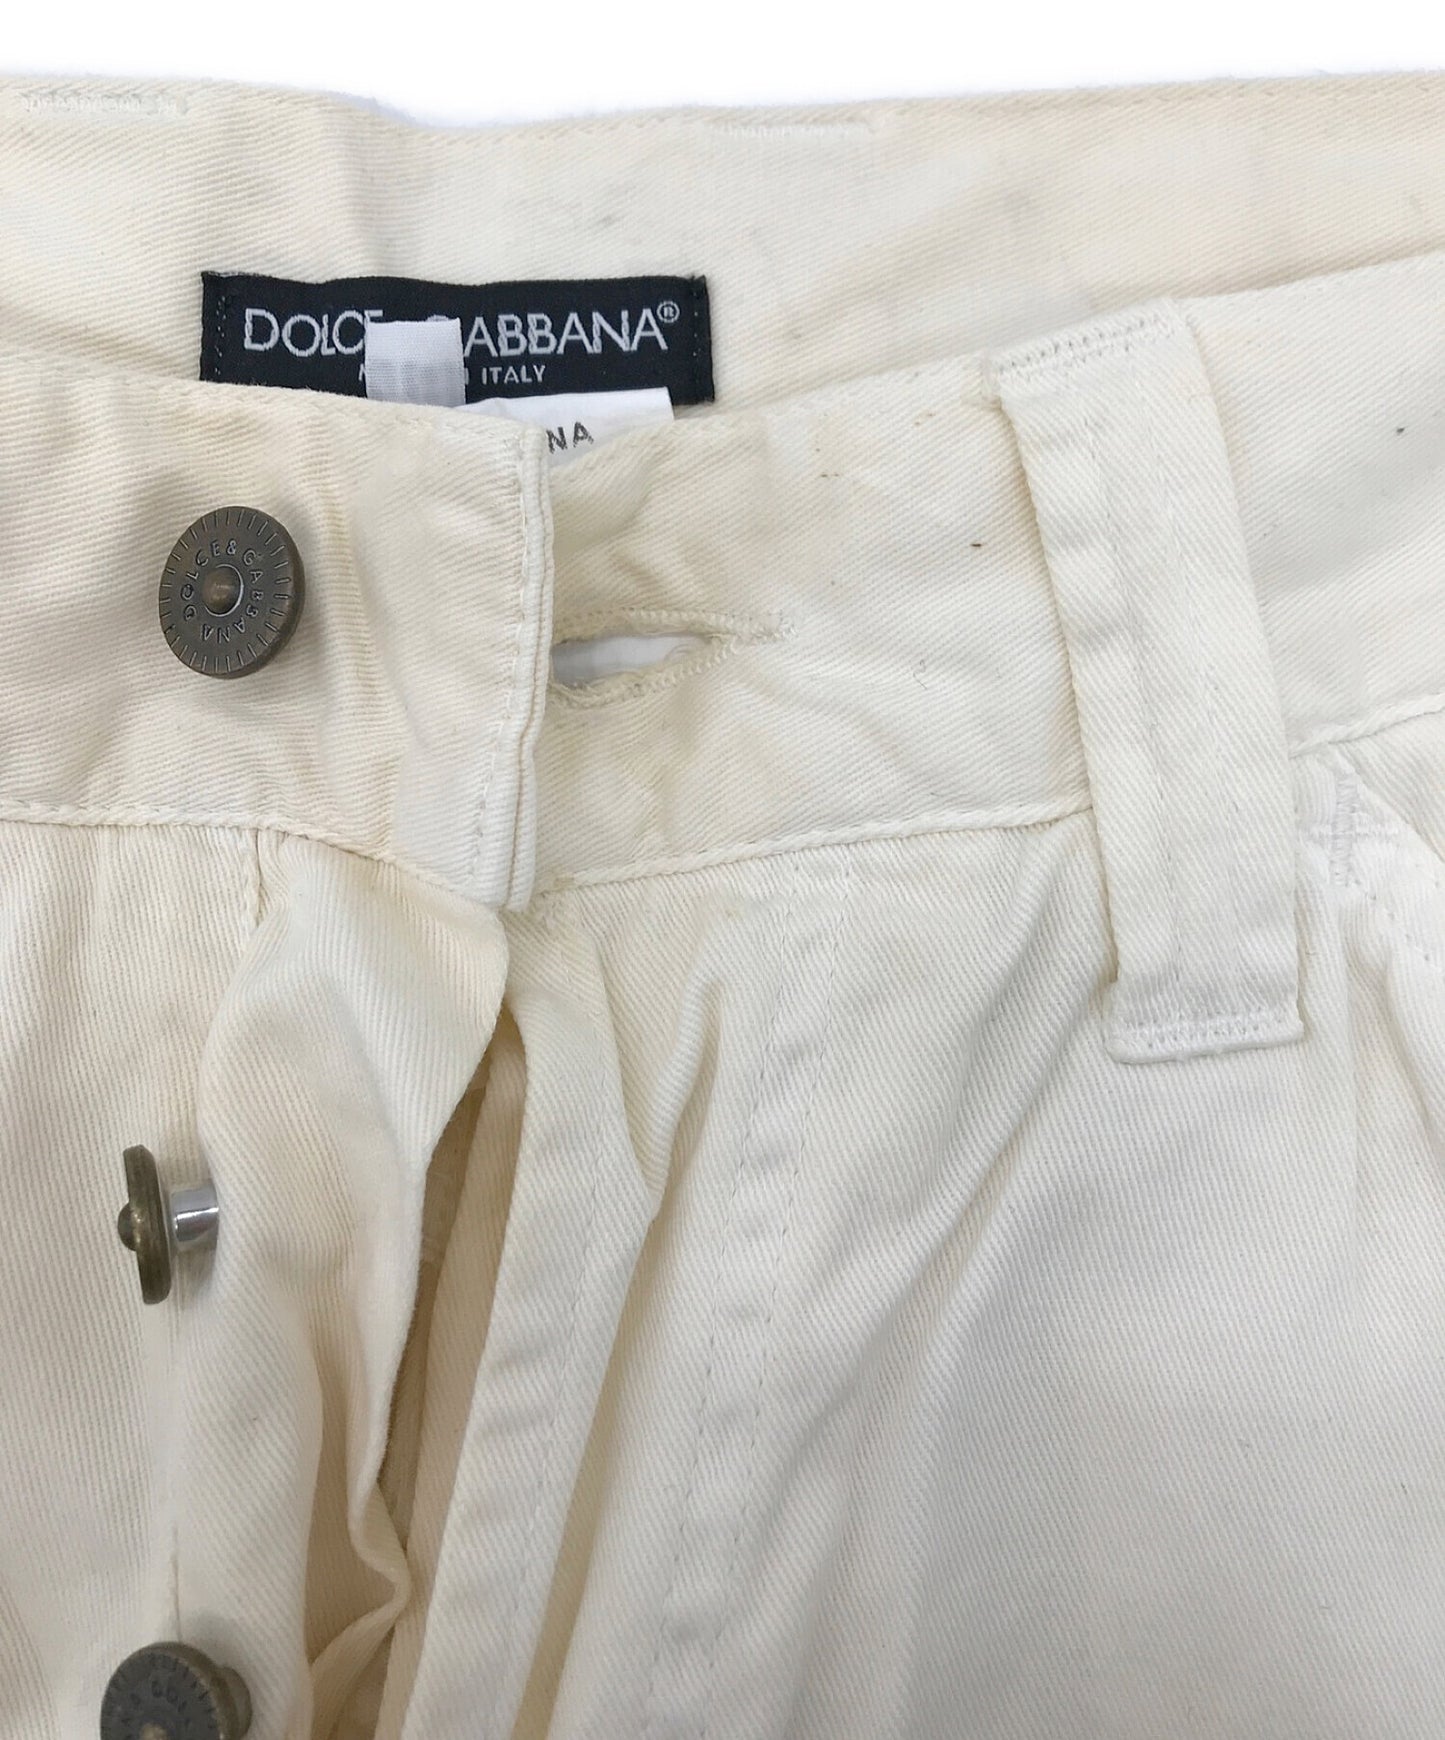 DOLCE & GABBANA cotton pants